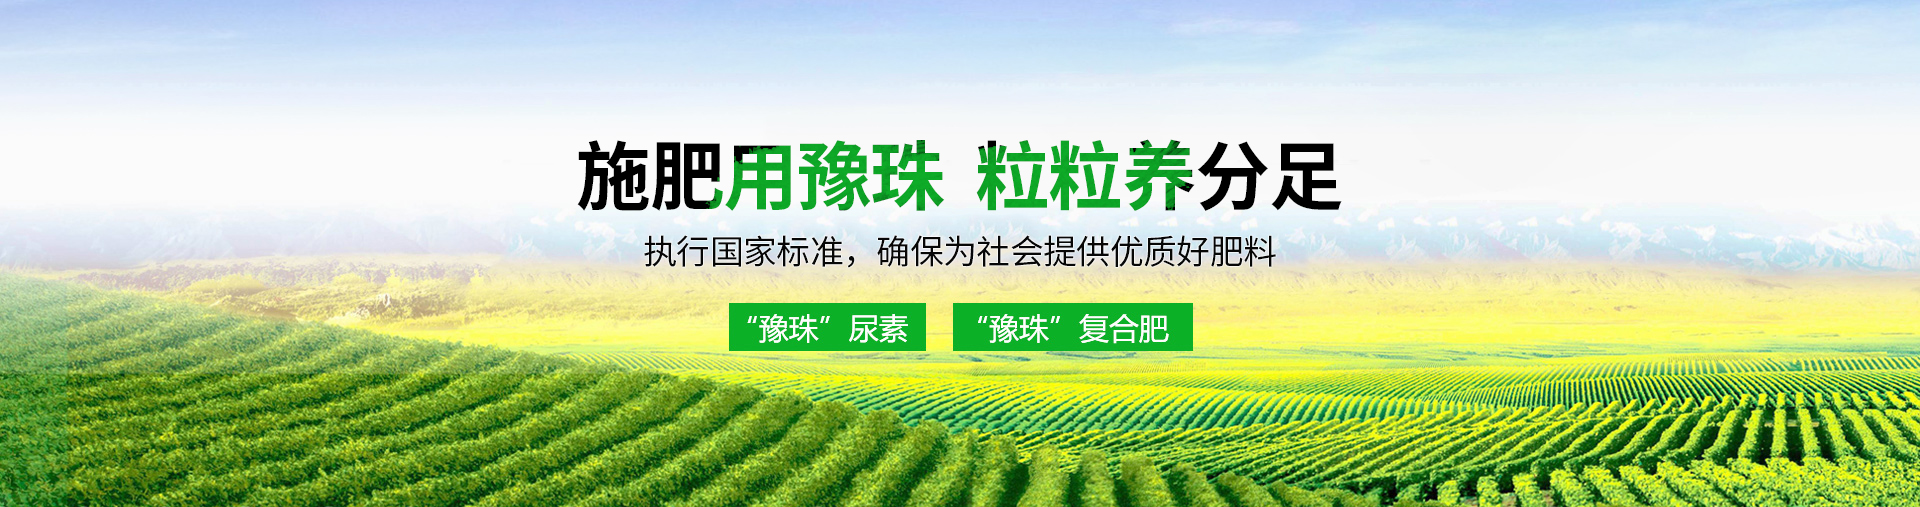 河南豫珠肥业有限责任公司